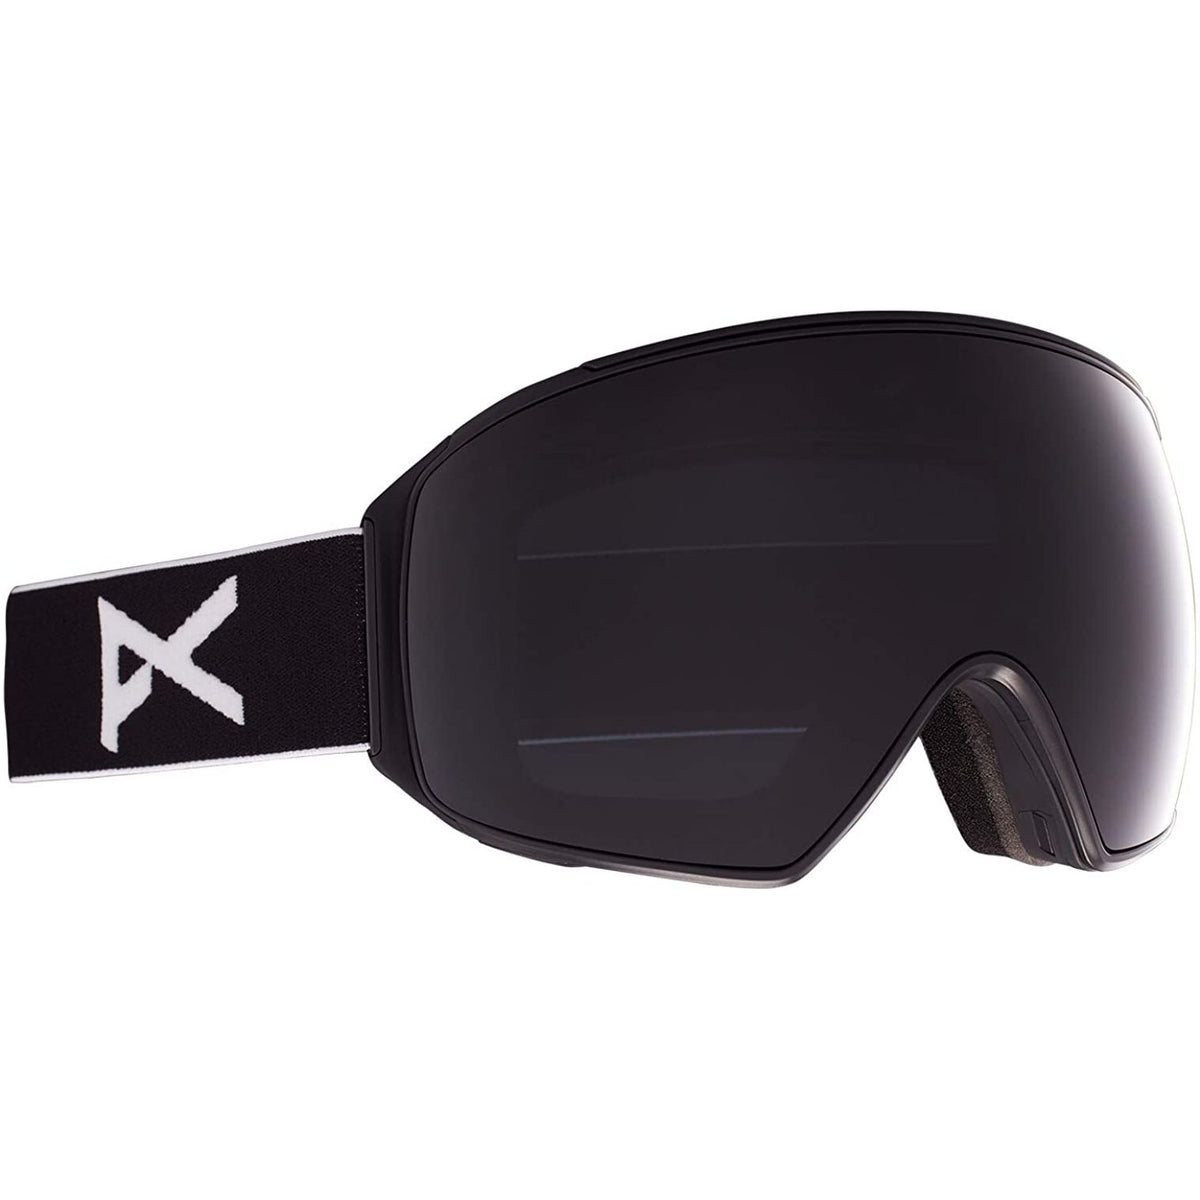 Anon M4 Polarized Toric Goggles + Bonus PERCEIVE Lens + MFI Face Mask